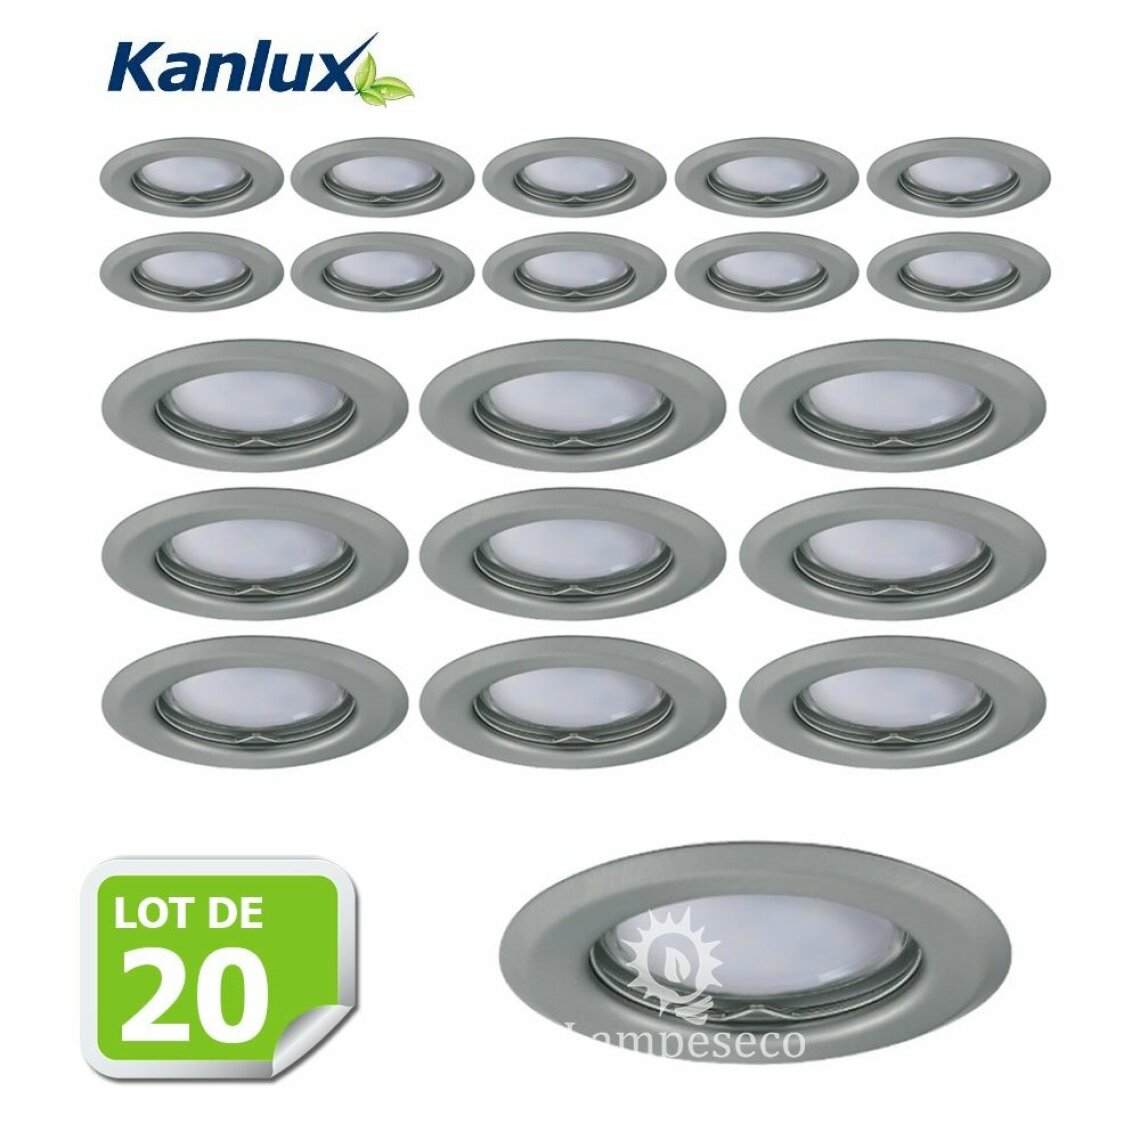 Kanlux - Lot de 20 Fixation de spot encastrable chrome matt D83mm marque Kanlux ref 26793 - Boîtes d'encastrement